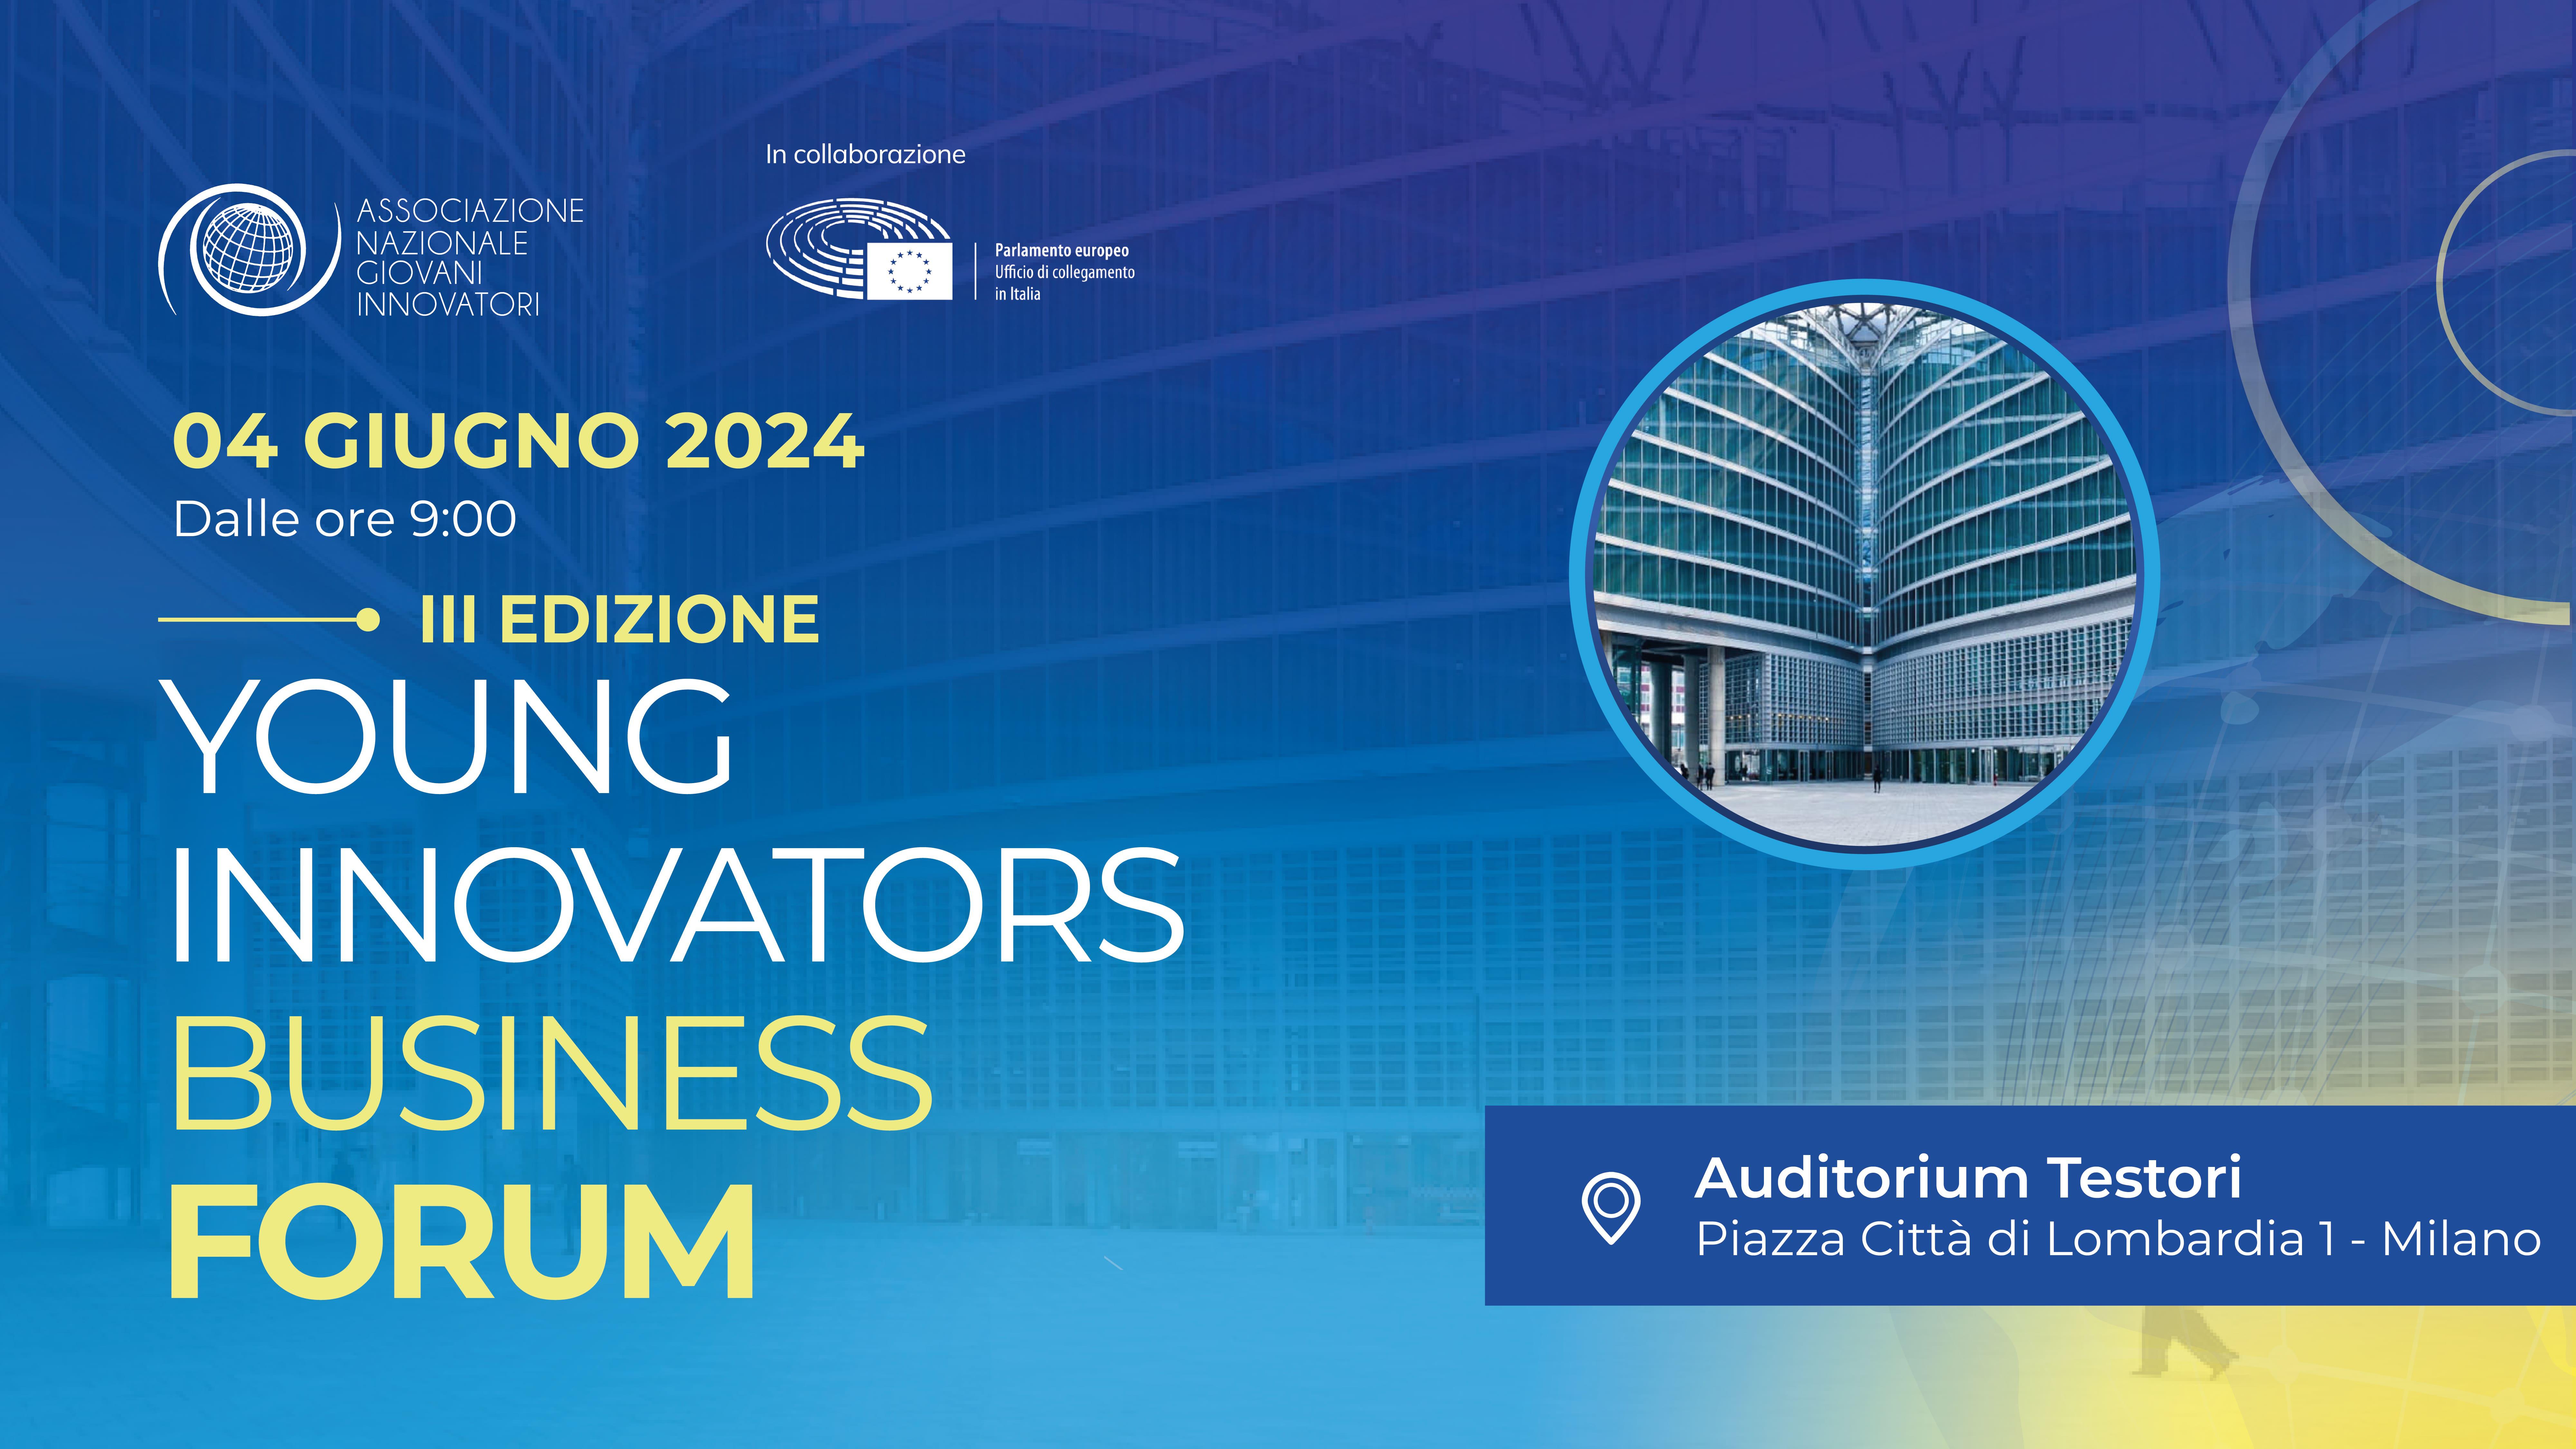 Milano, innovationens huvudstad, är värd för den tredje upplagan av Young Innovators Business Forum